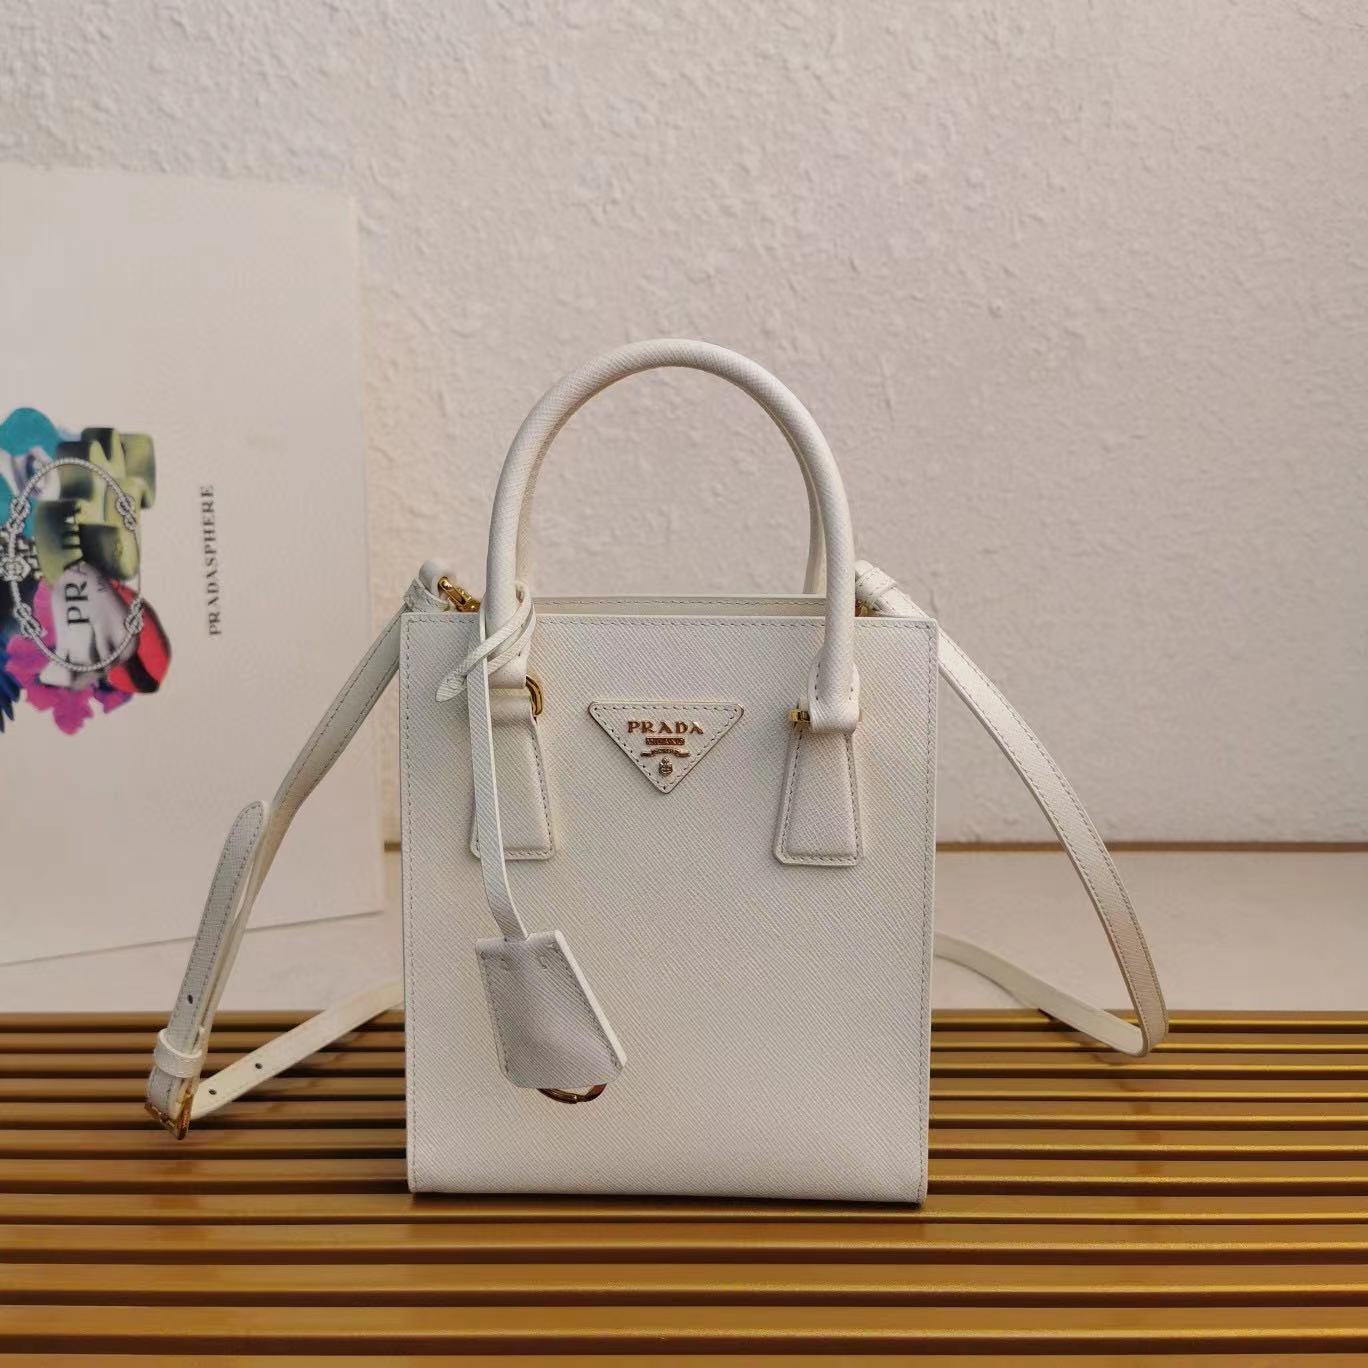 Prada Saffiano Leather Handbag - DesignerGu